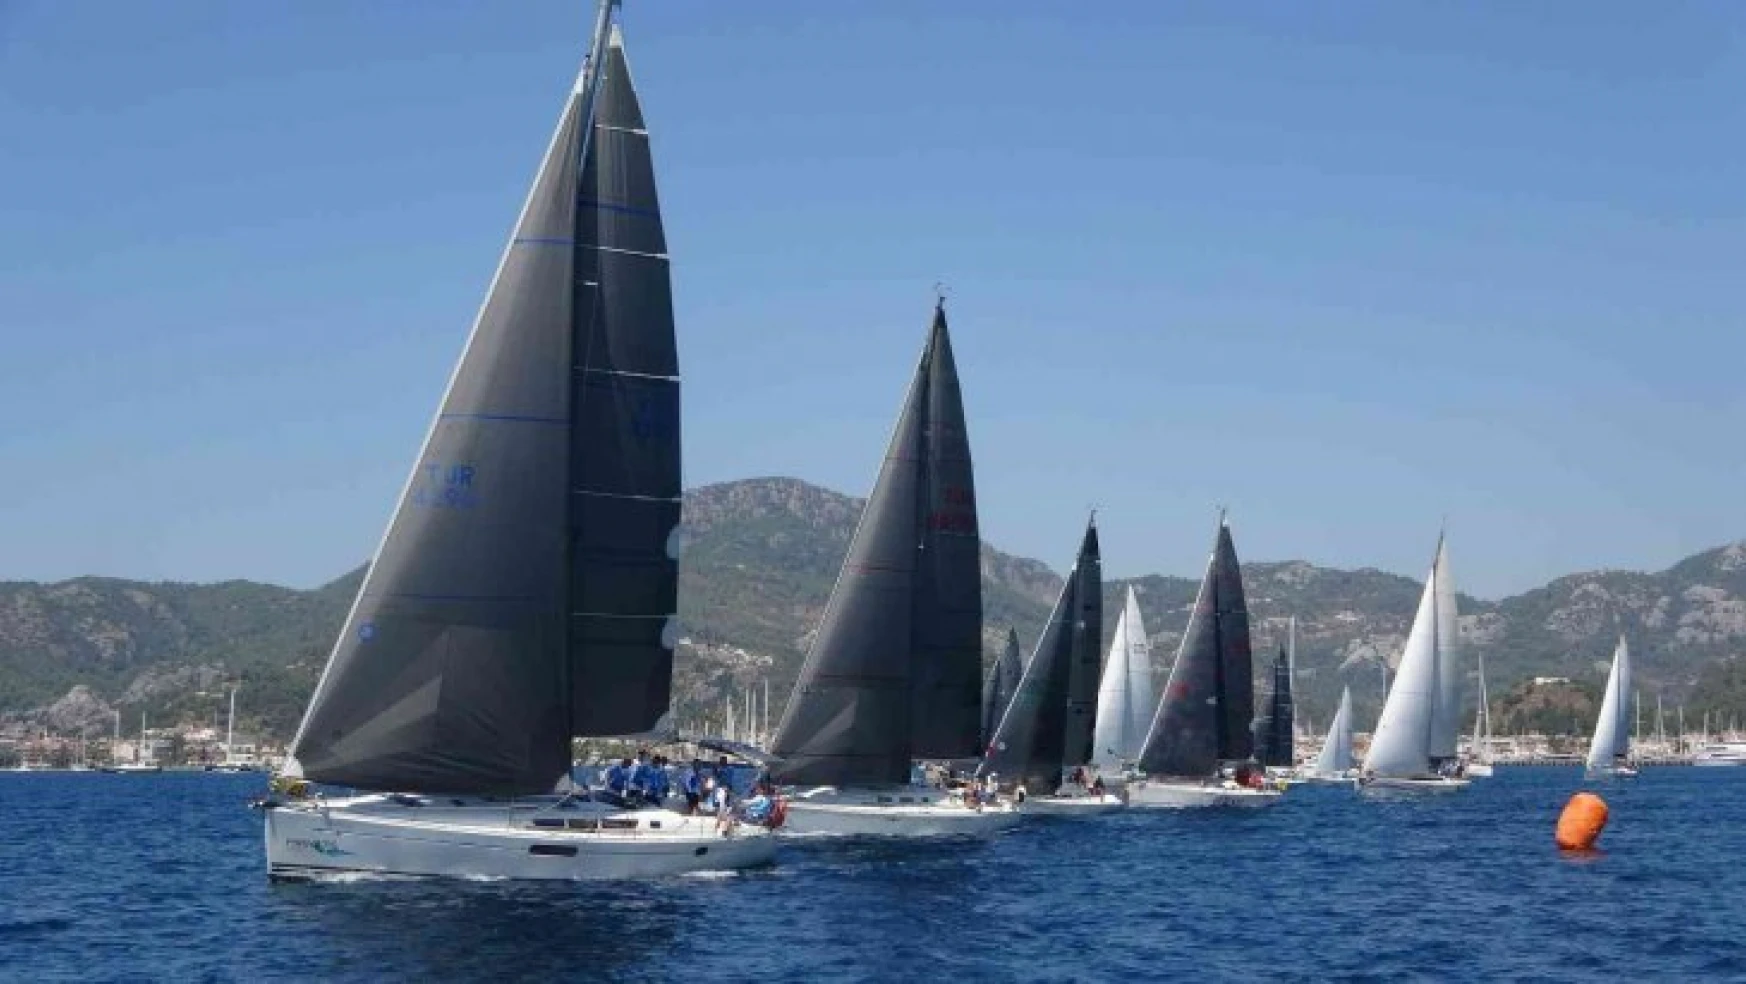 15.Channel Regatta Yelken yarışlarının ilk günü tamamlandı